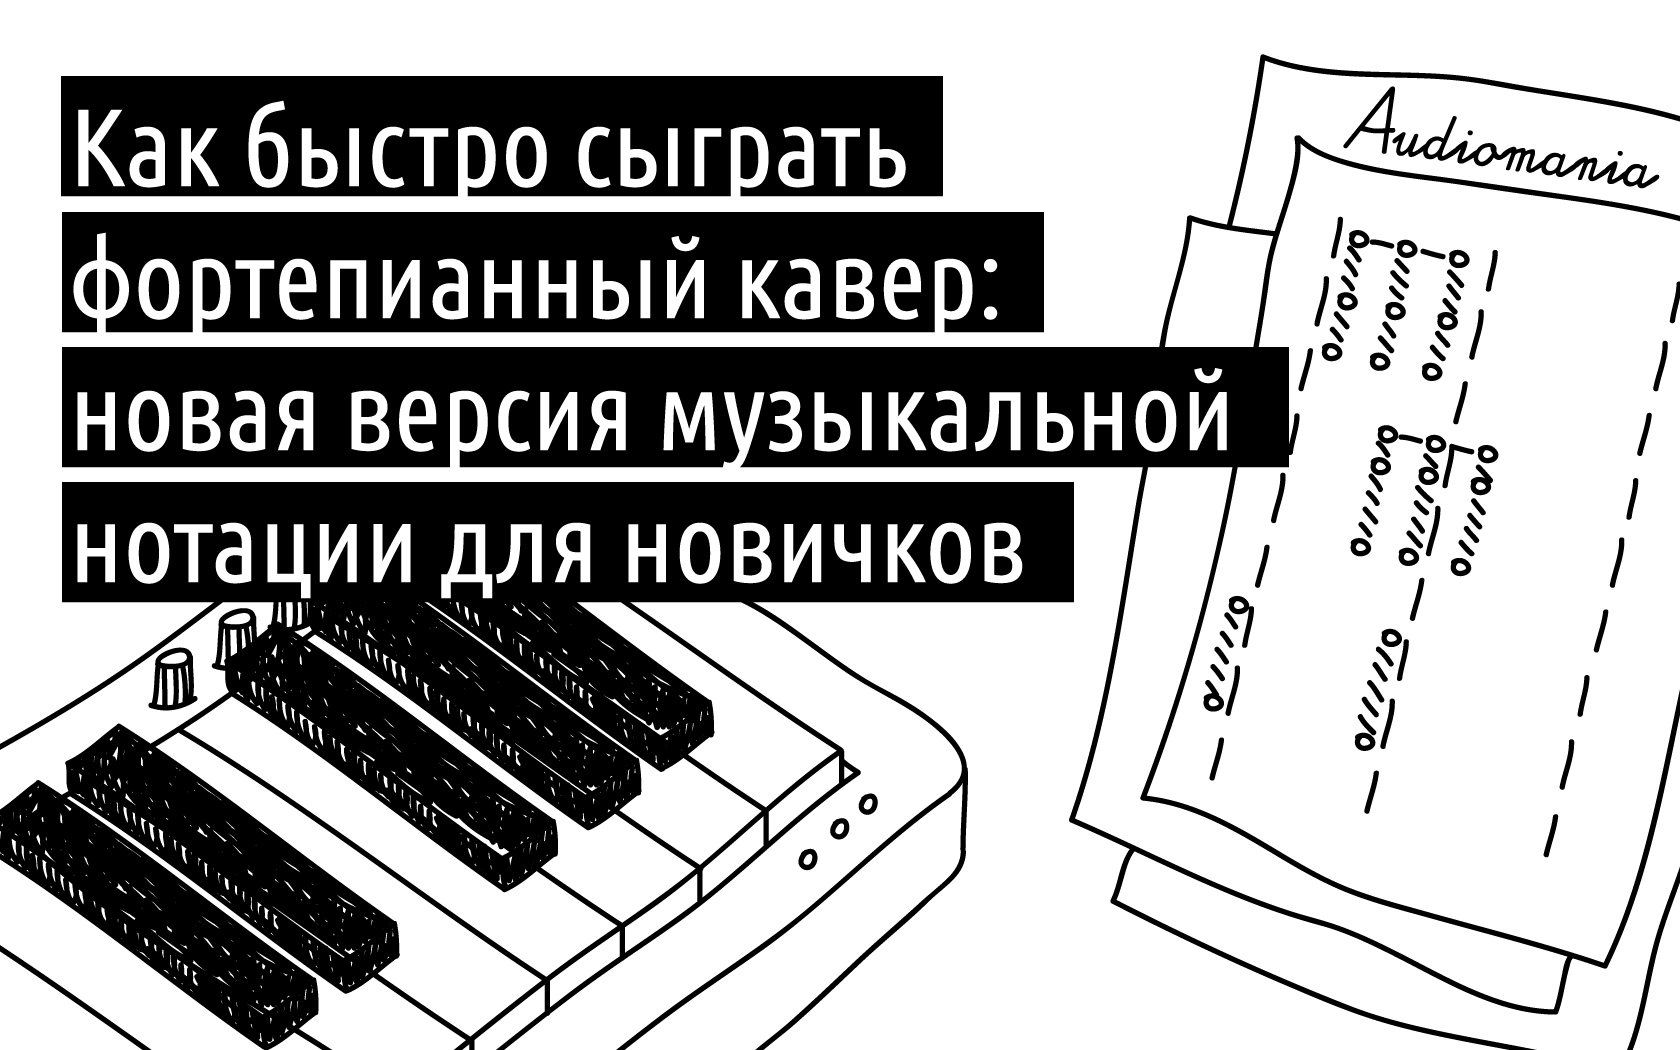 Организация левой клавиатуры современного баяна. Видеоупражнения - Школьный музыкант